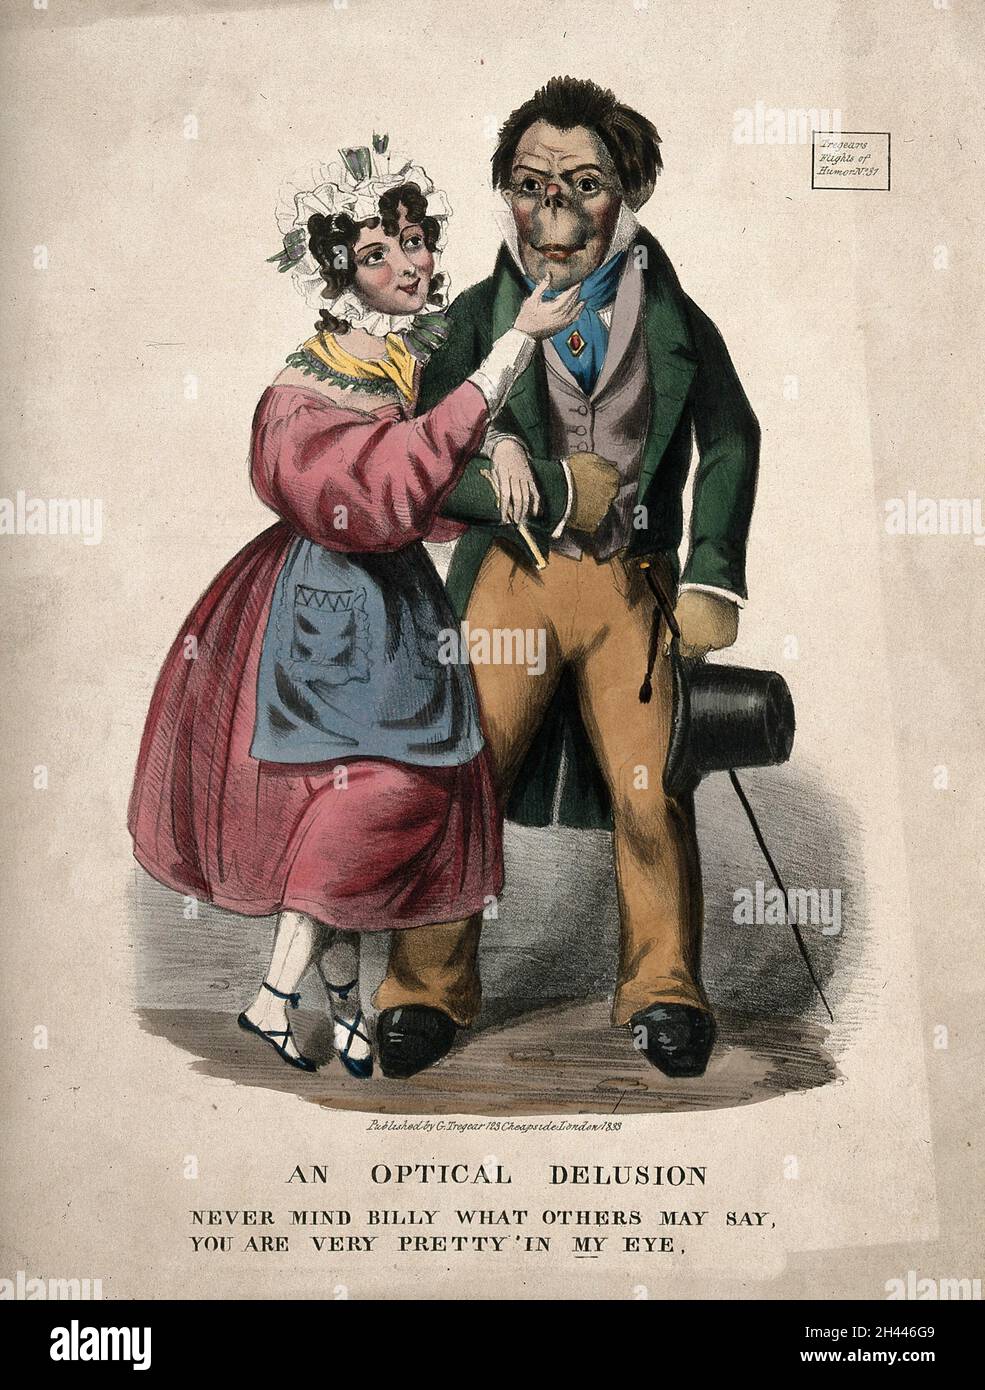 Eine attraktive Frau umwerben, einem seltsam aussehenden Mann; was darauf hindeutet, dass die Schönheit liegt im Auge des Betrachters. Farbige Lithographie, 1833. Stockfoto